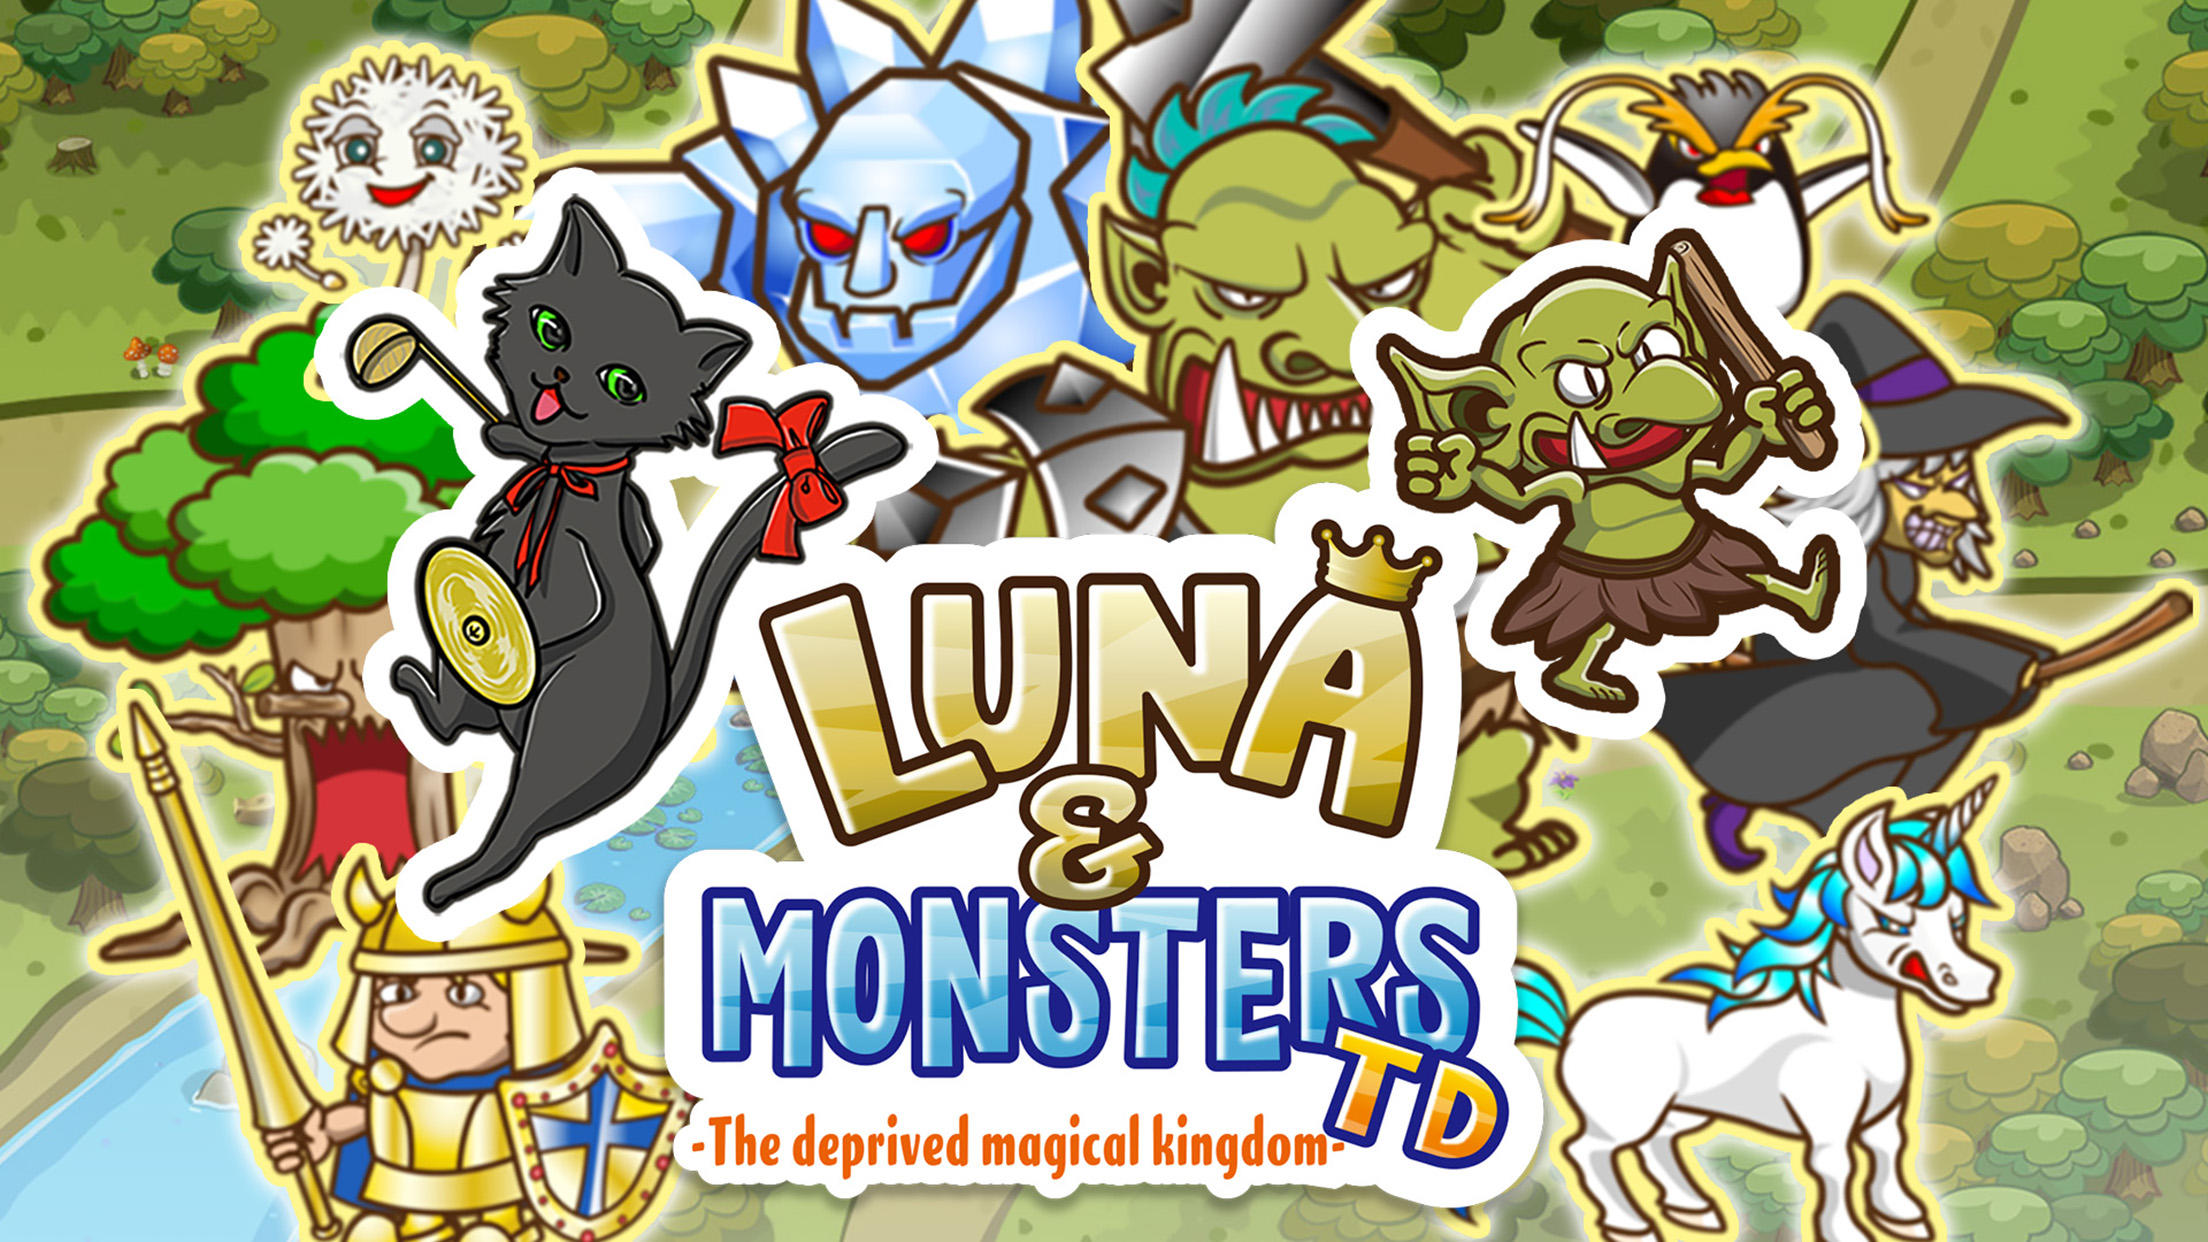 Screenshot 1 of Luna at Monsters Tower Defense 